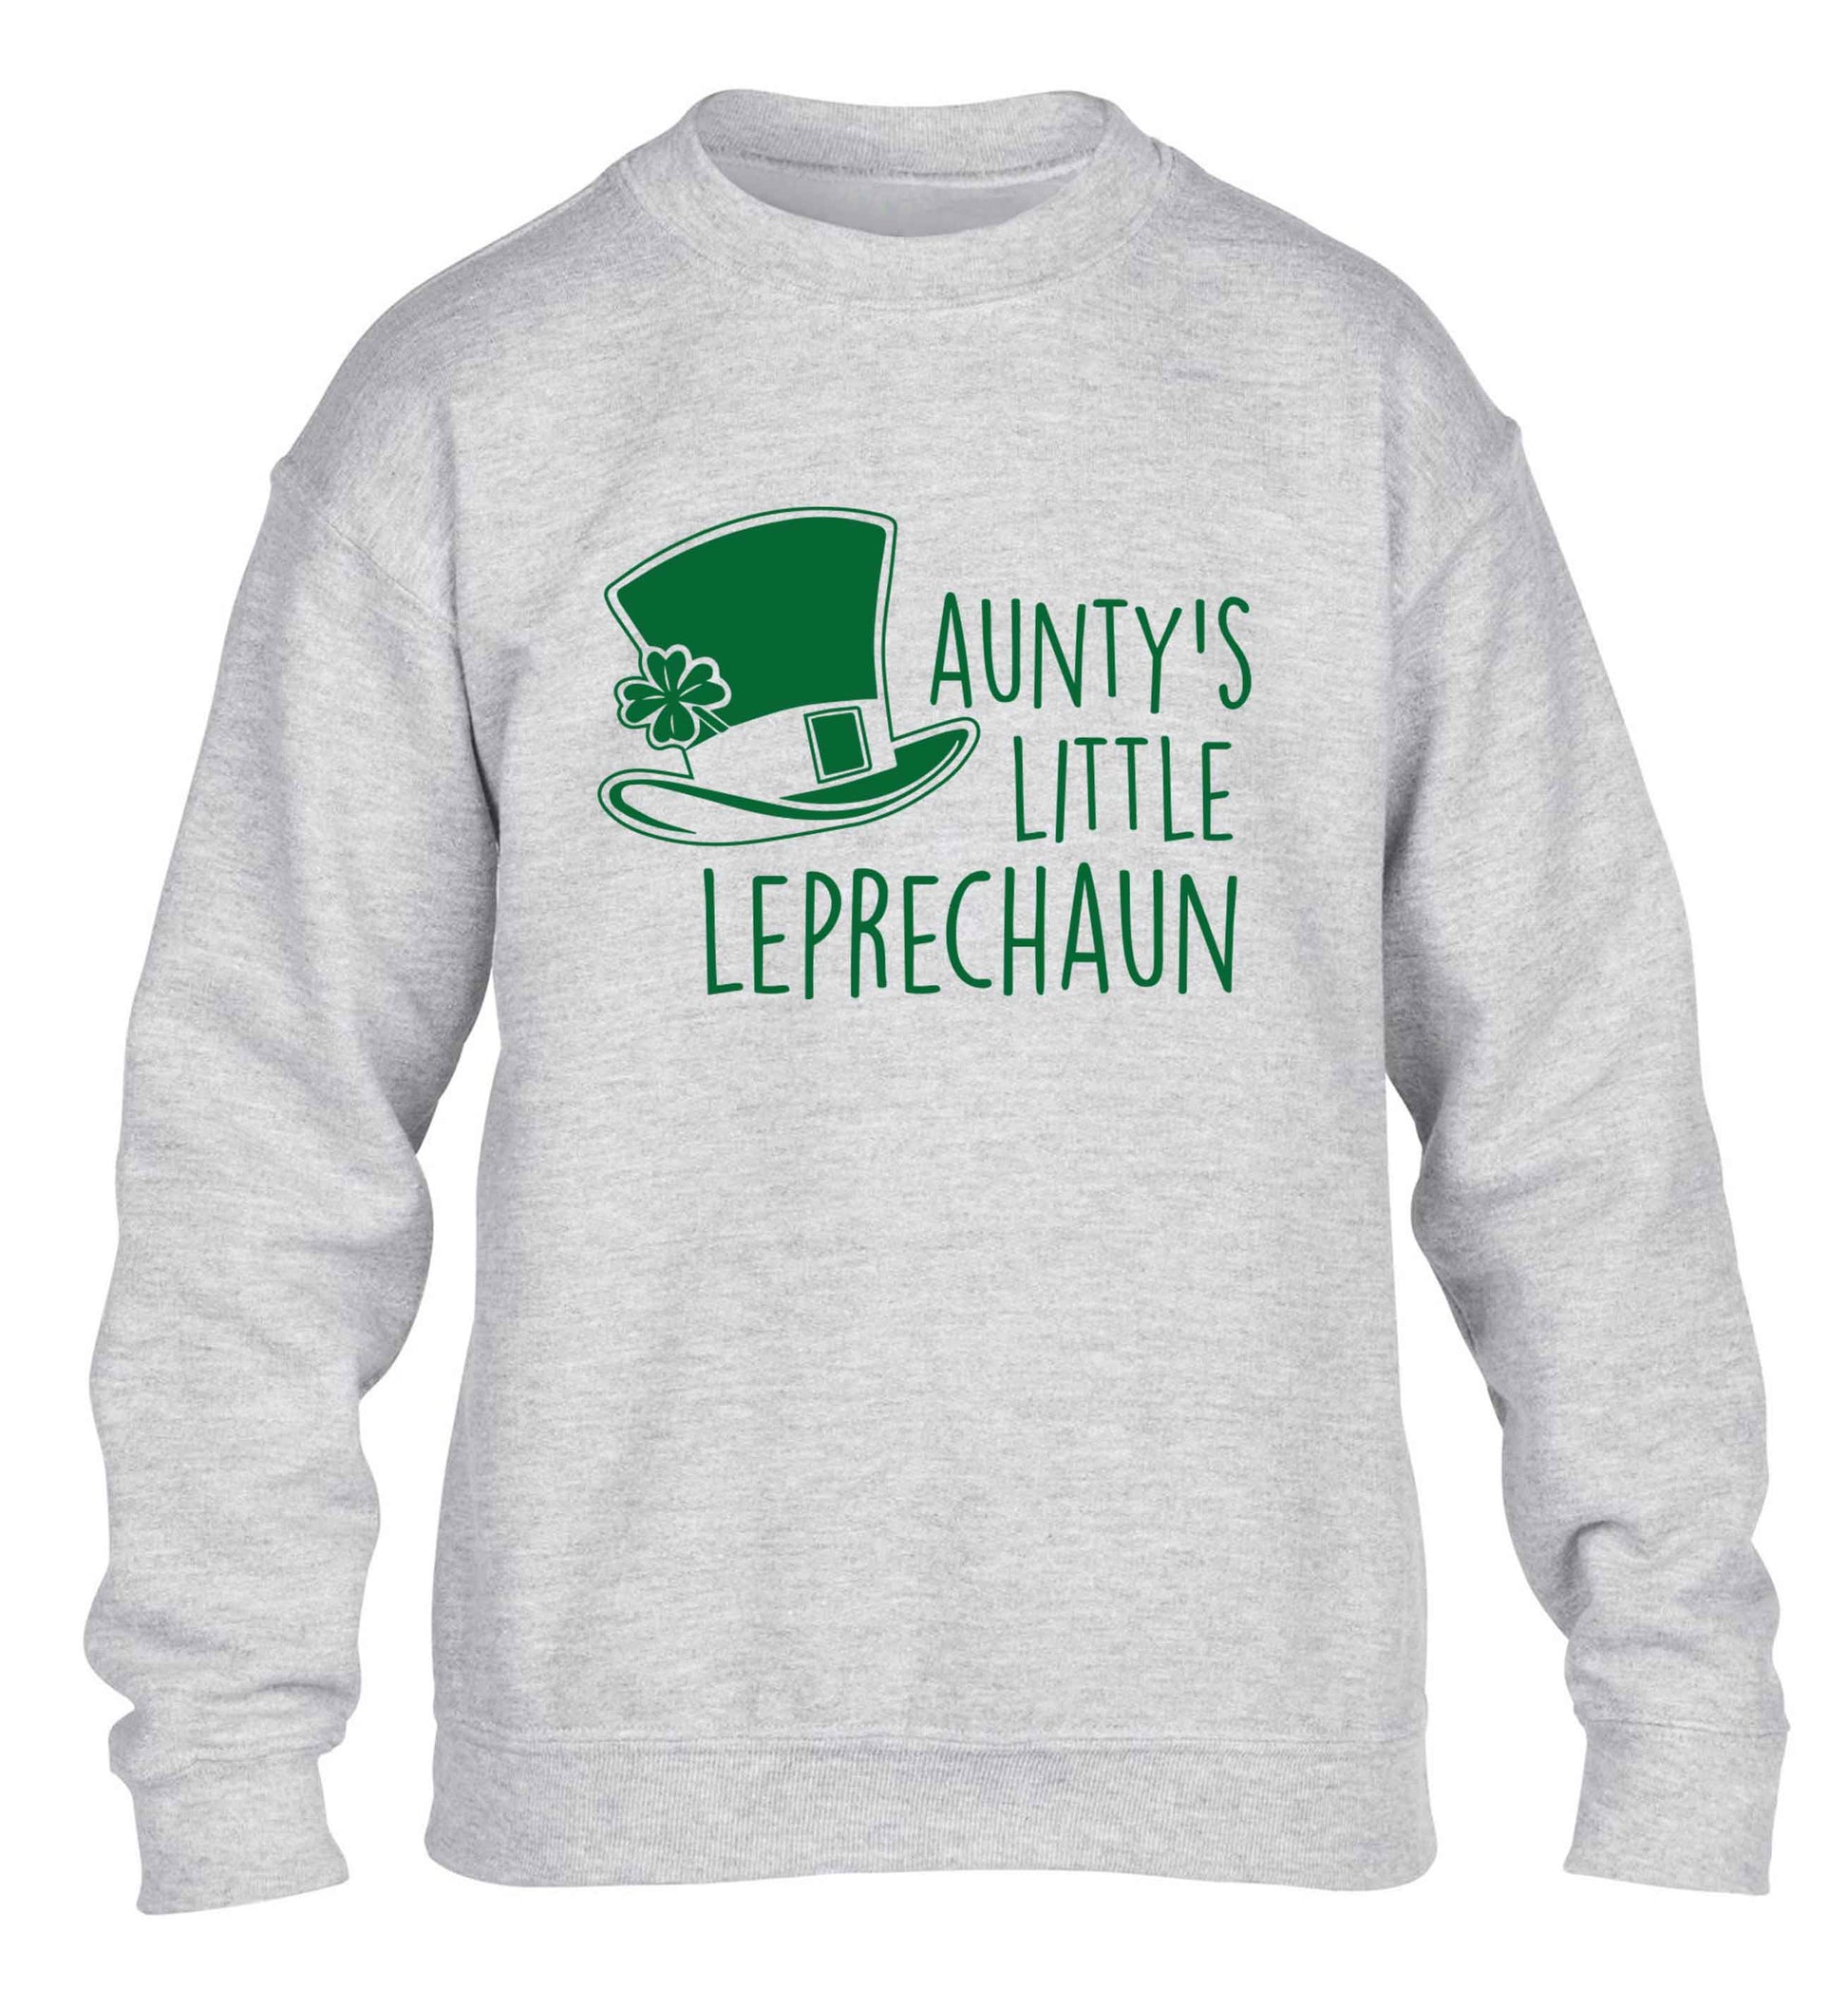 Aunty's little leprechaun children's grey sweater 12-13 Years